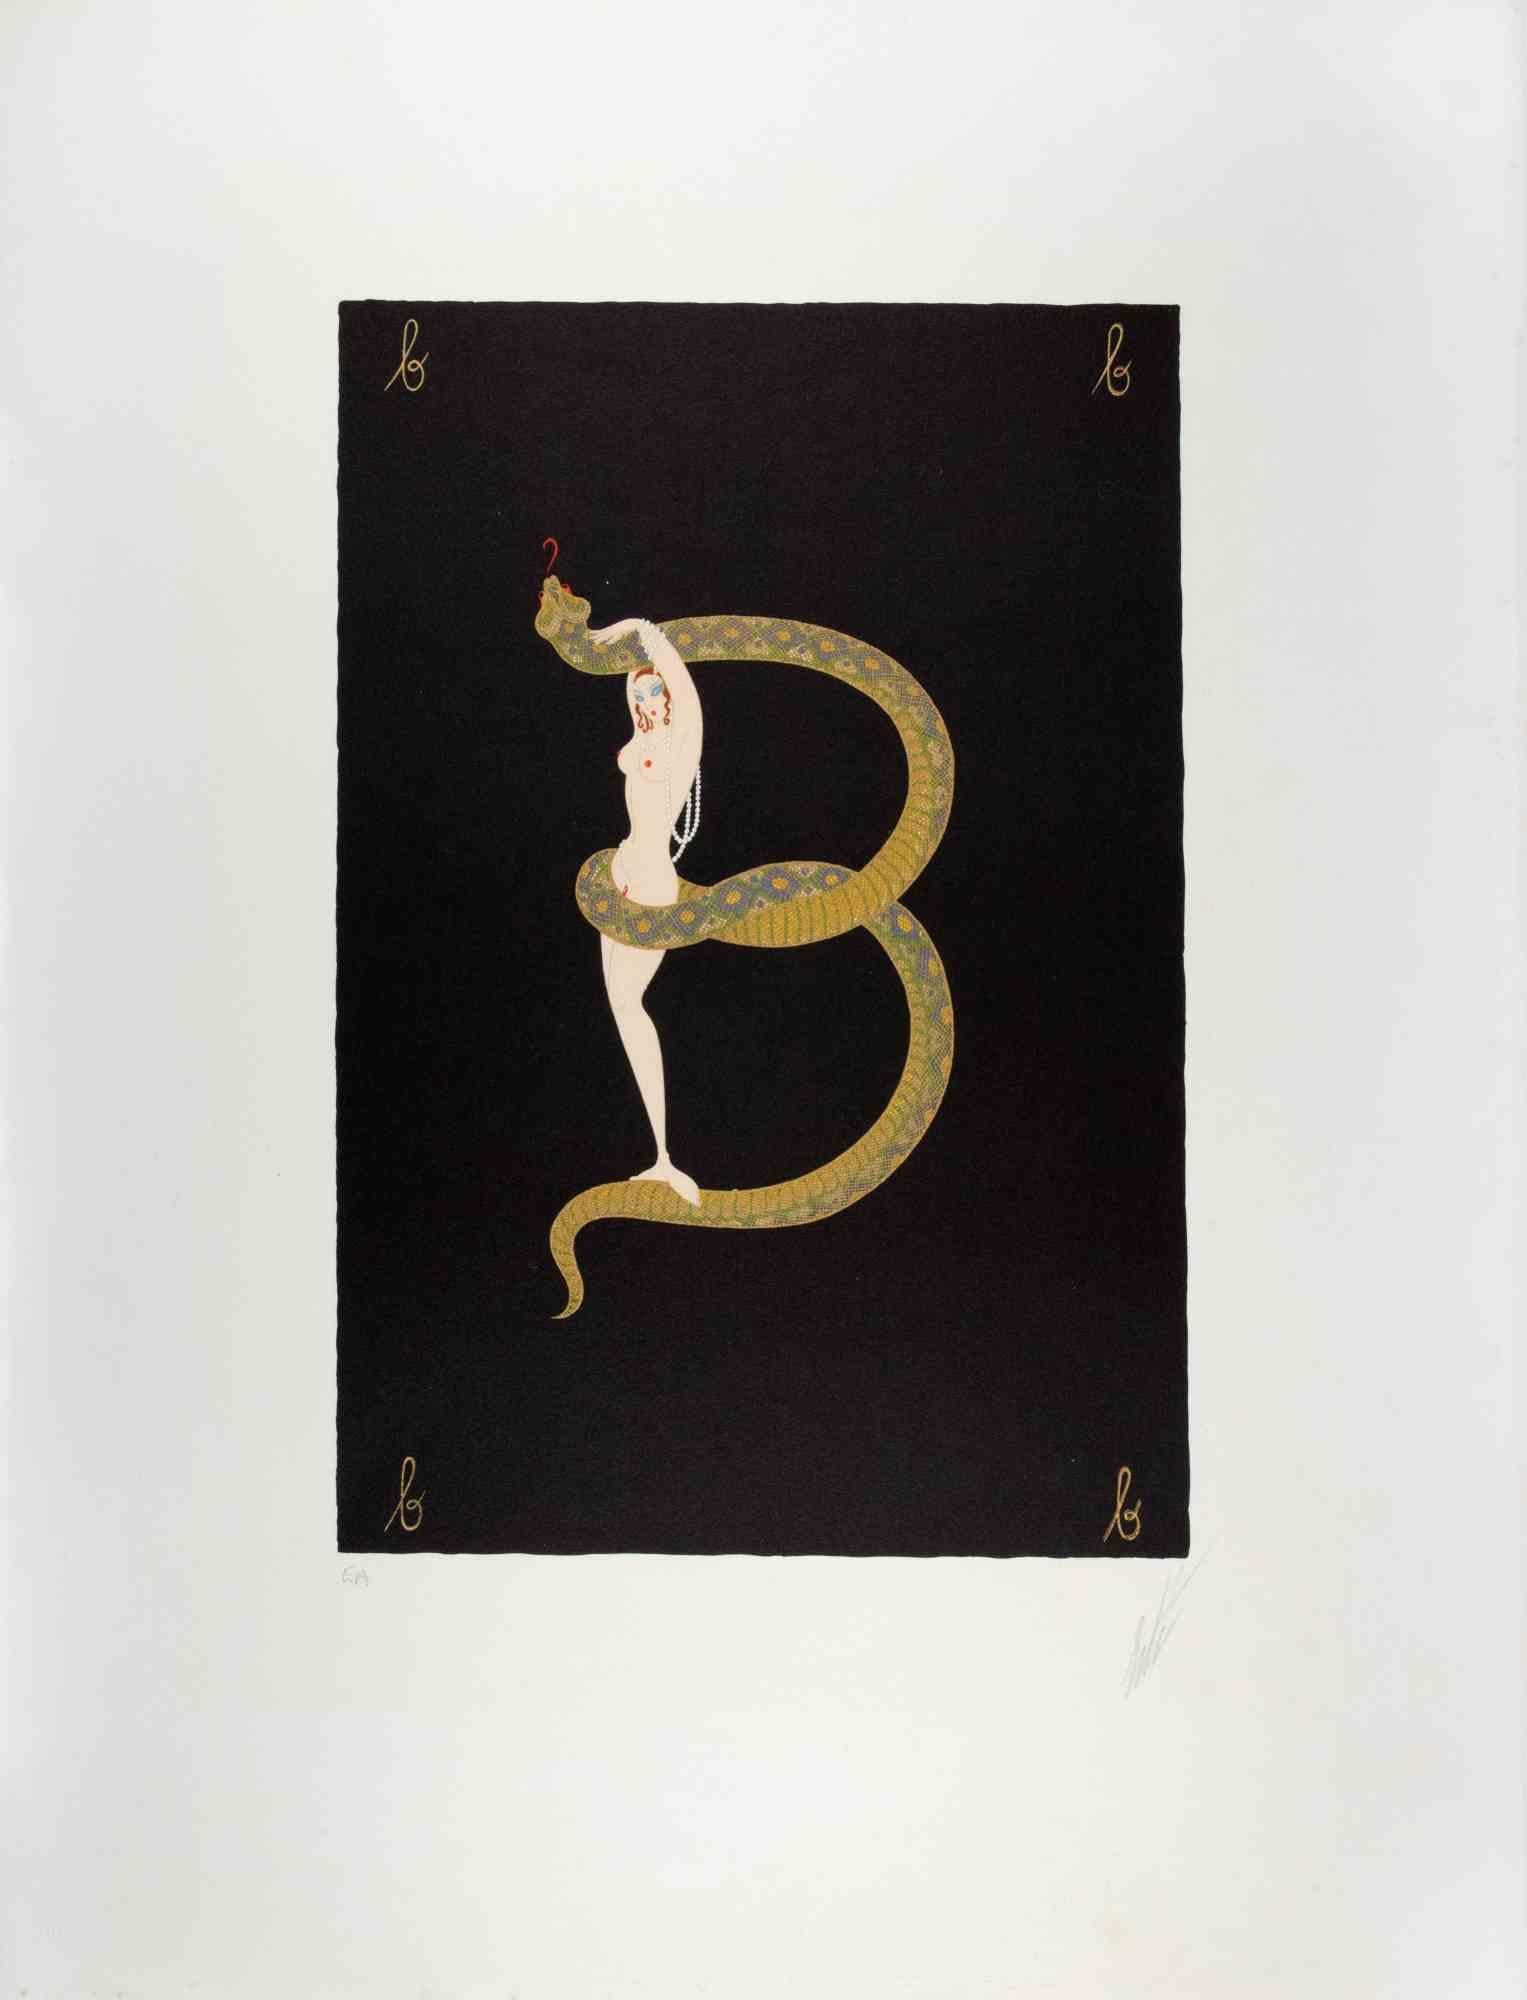 Buchstabe B - aus der Suite Letters of the Alphabet ist ein zeitgenössisches Kunstwerk von Erté (Romain de Tirtoff).

Lithographie und Siebdruck.

Das Kunstwerk stammt aus der Suite "Letters of the Alphabet", 1976,

Handsigniert am unteren Rand.